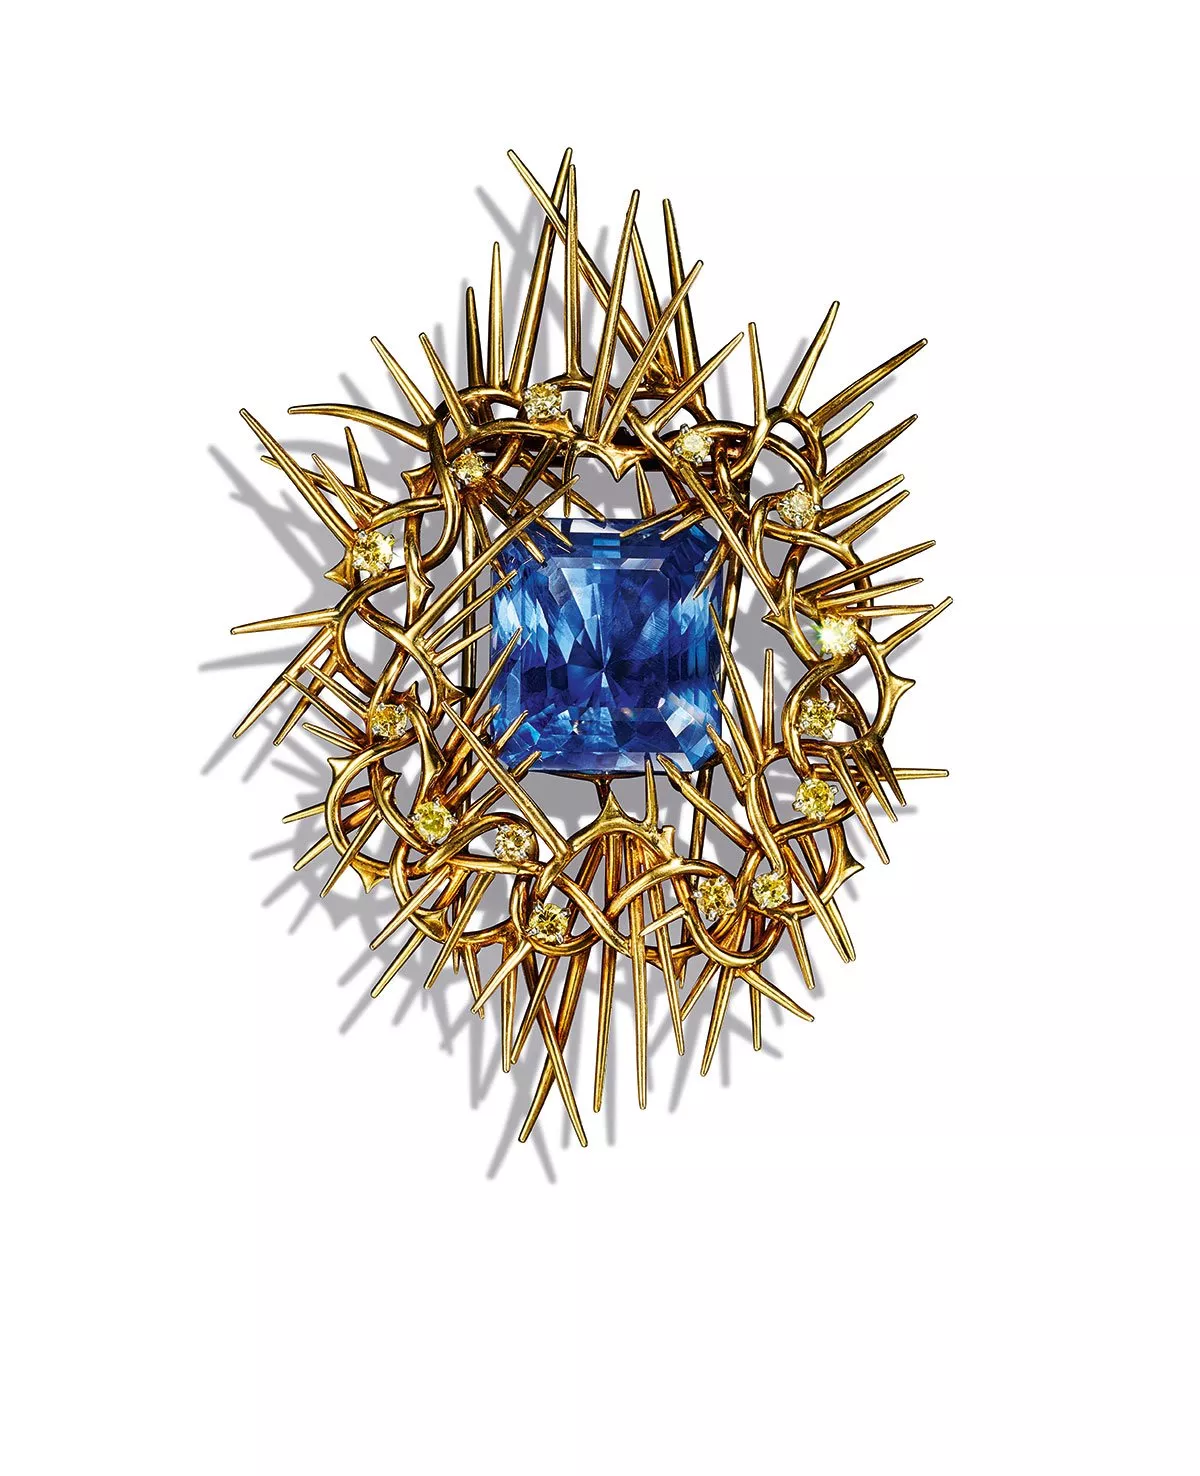 علامة Tiffany & Co تُطلق تصميم Crown of Thorns بالتعاون مع الفنان كيندريك لامار